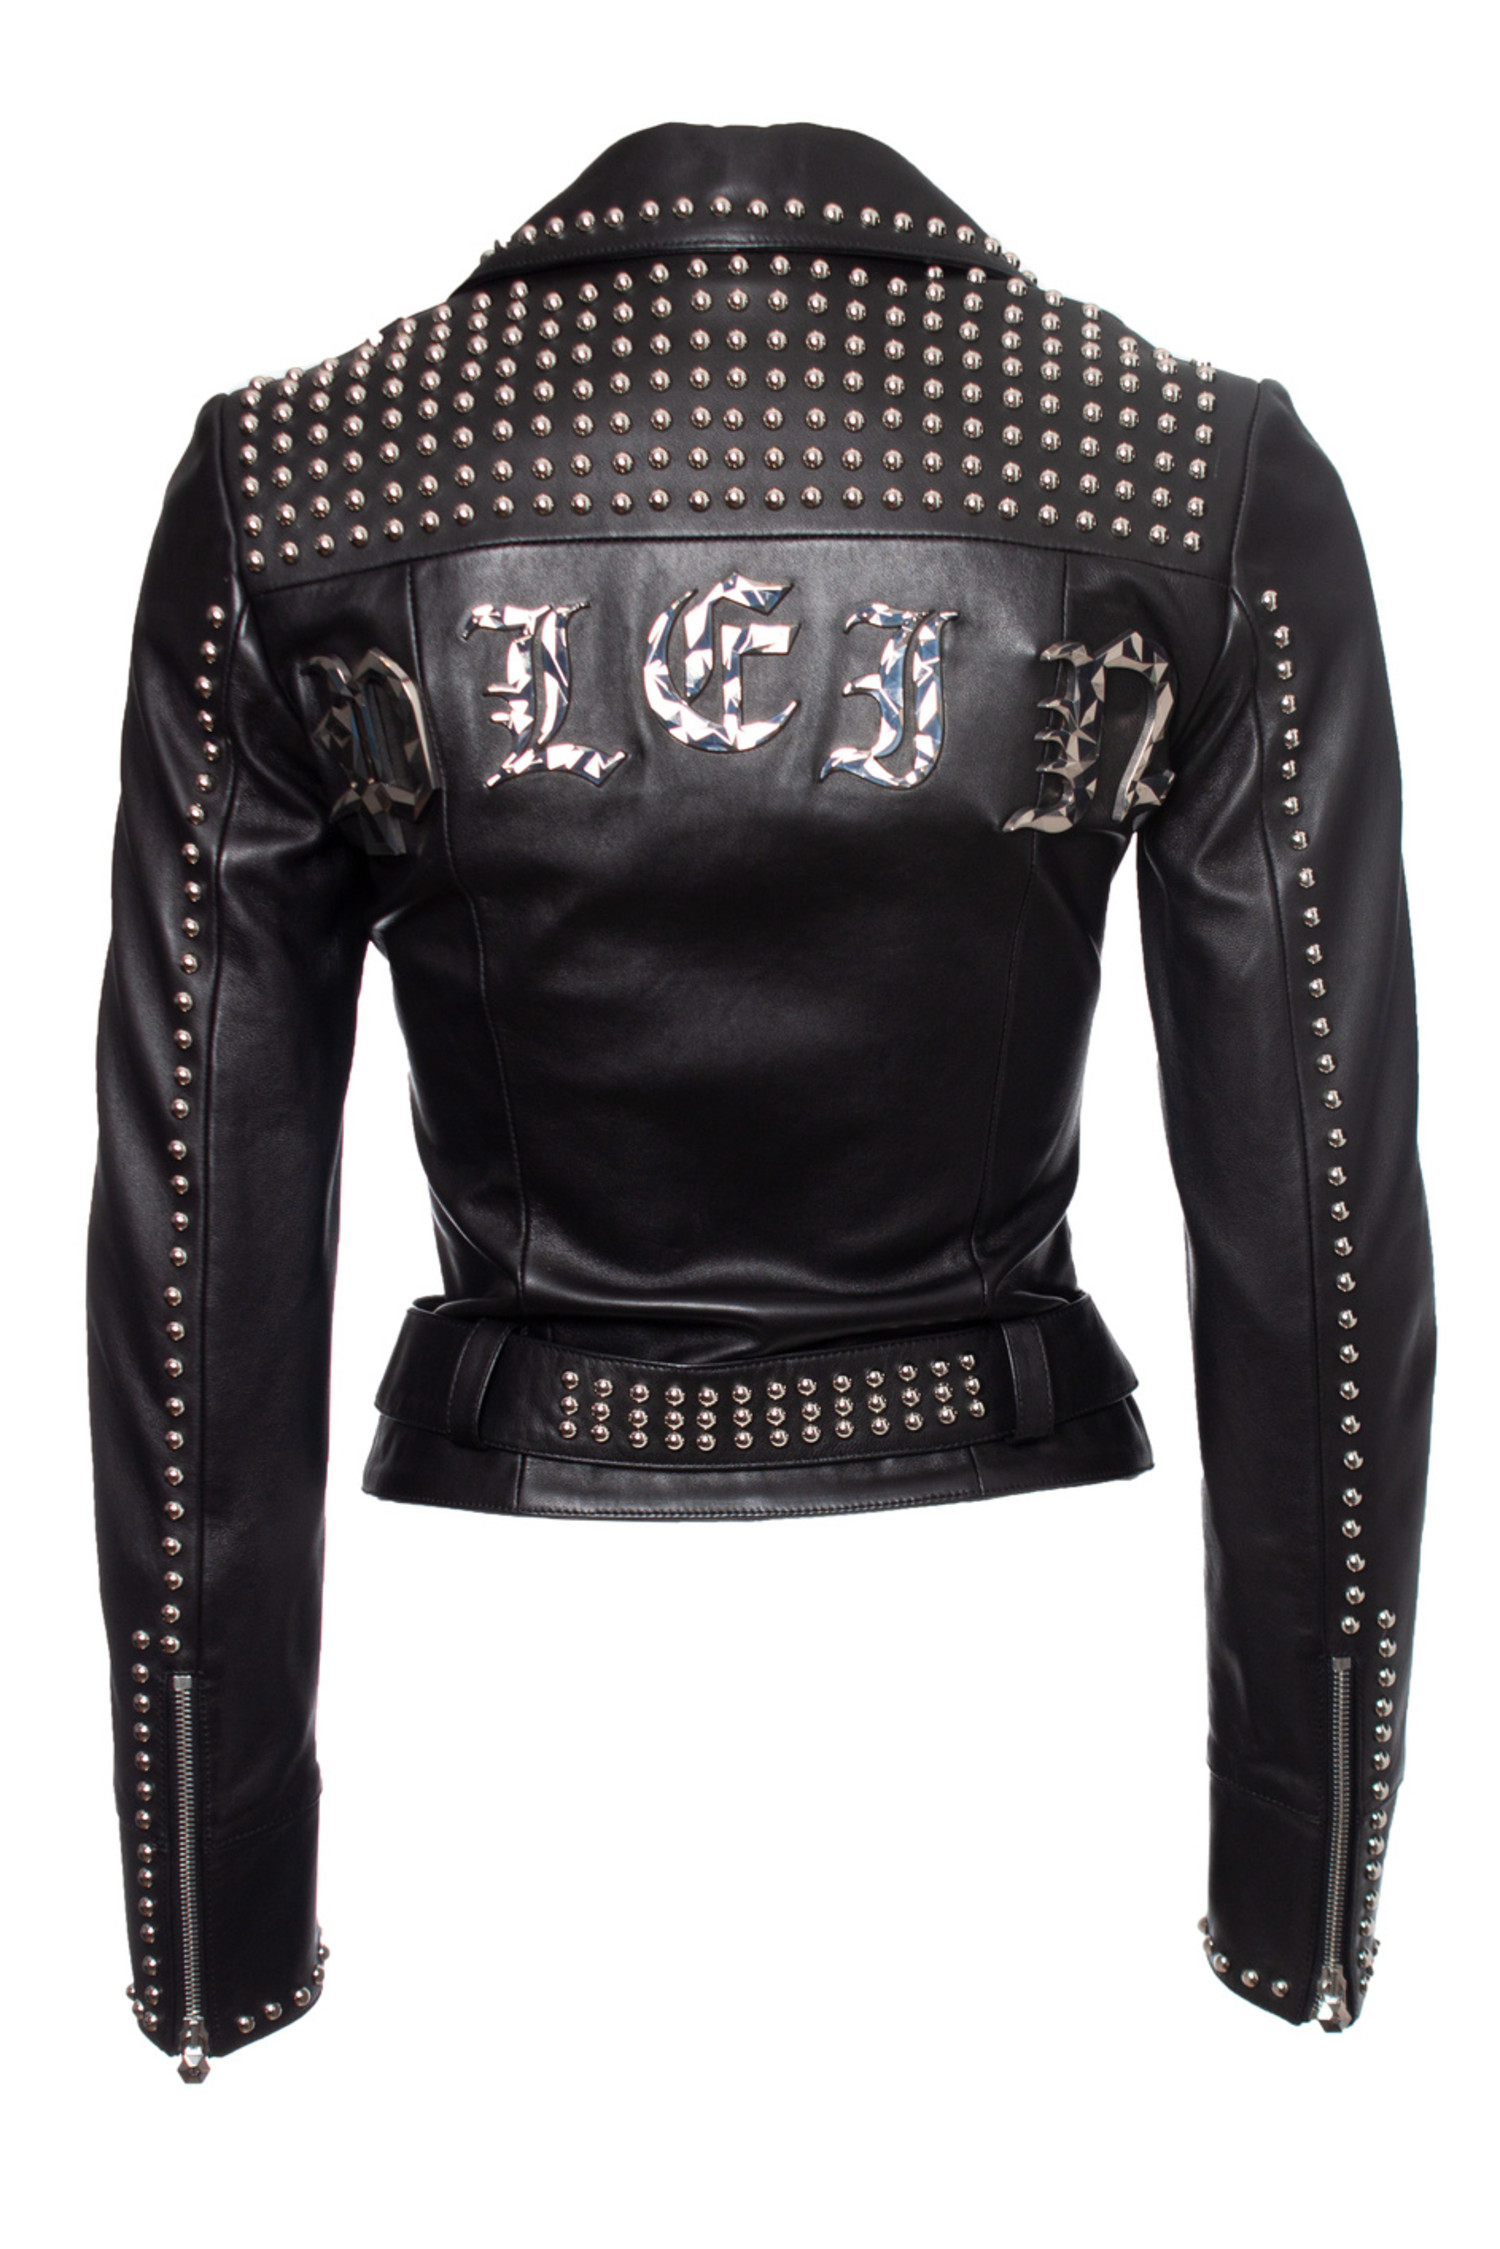 Punk Black Leather Studded Biker Jacket Men's